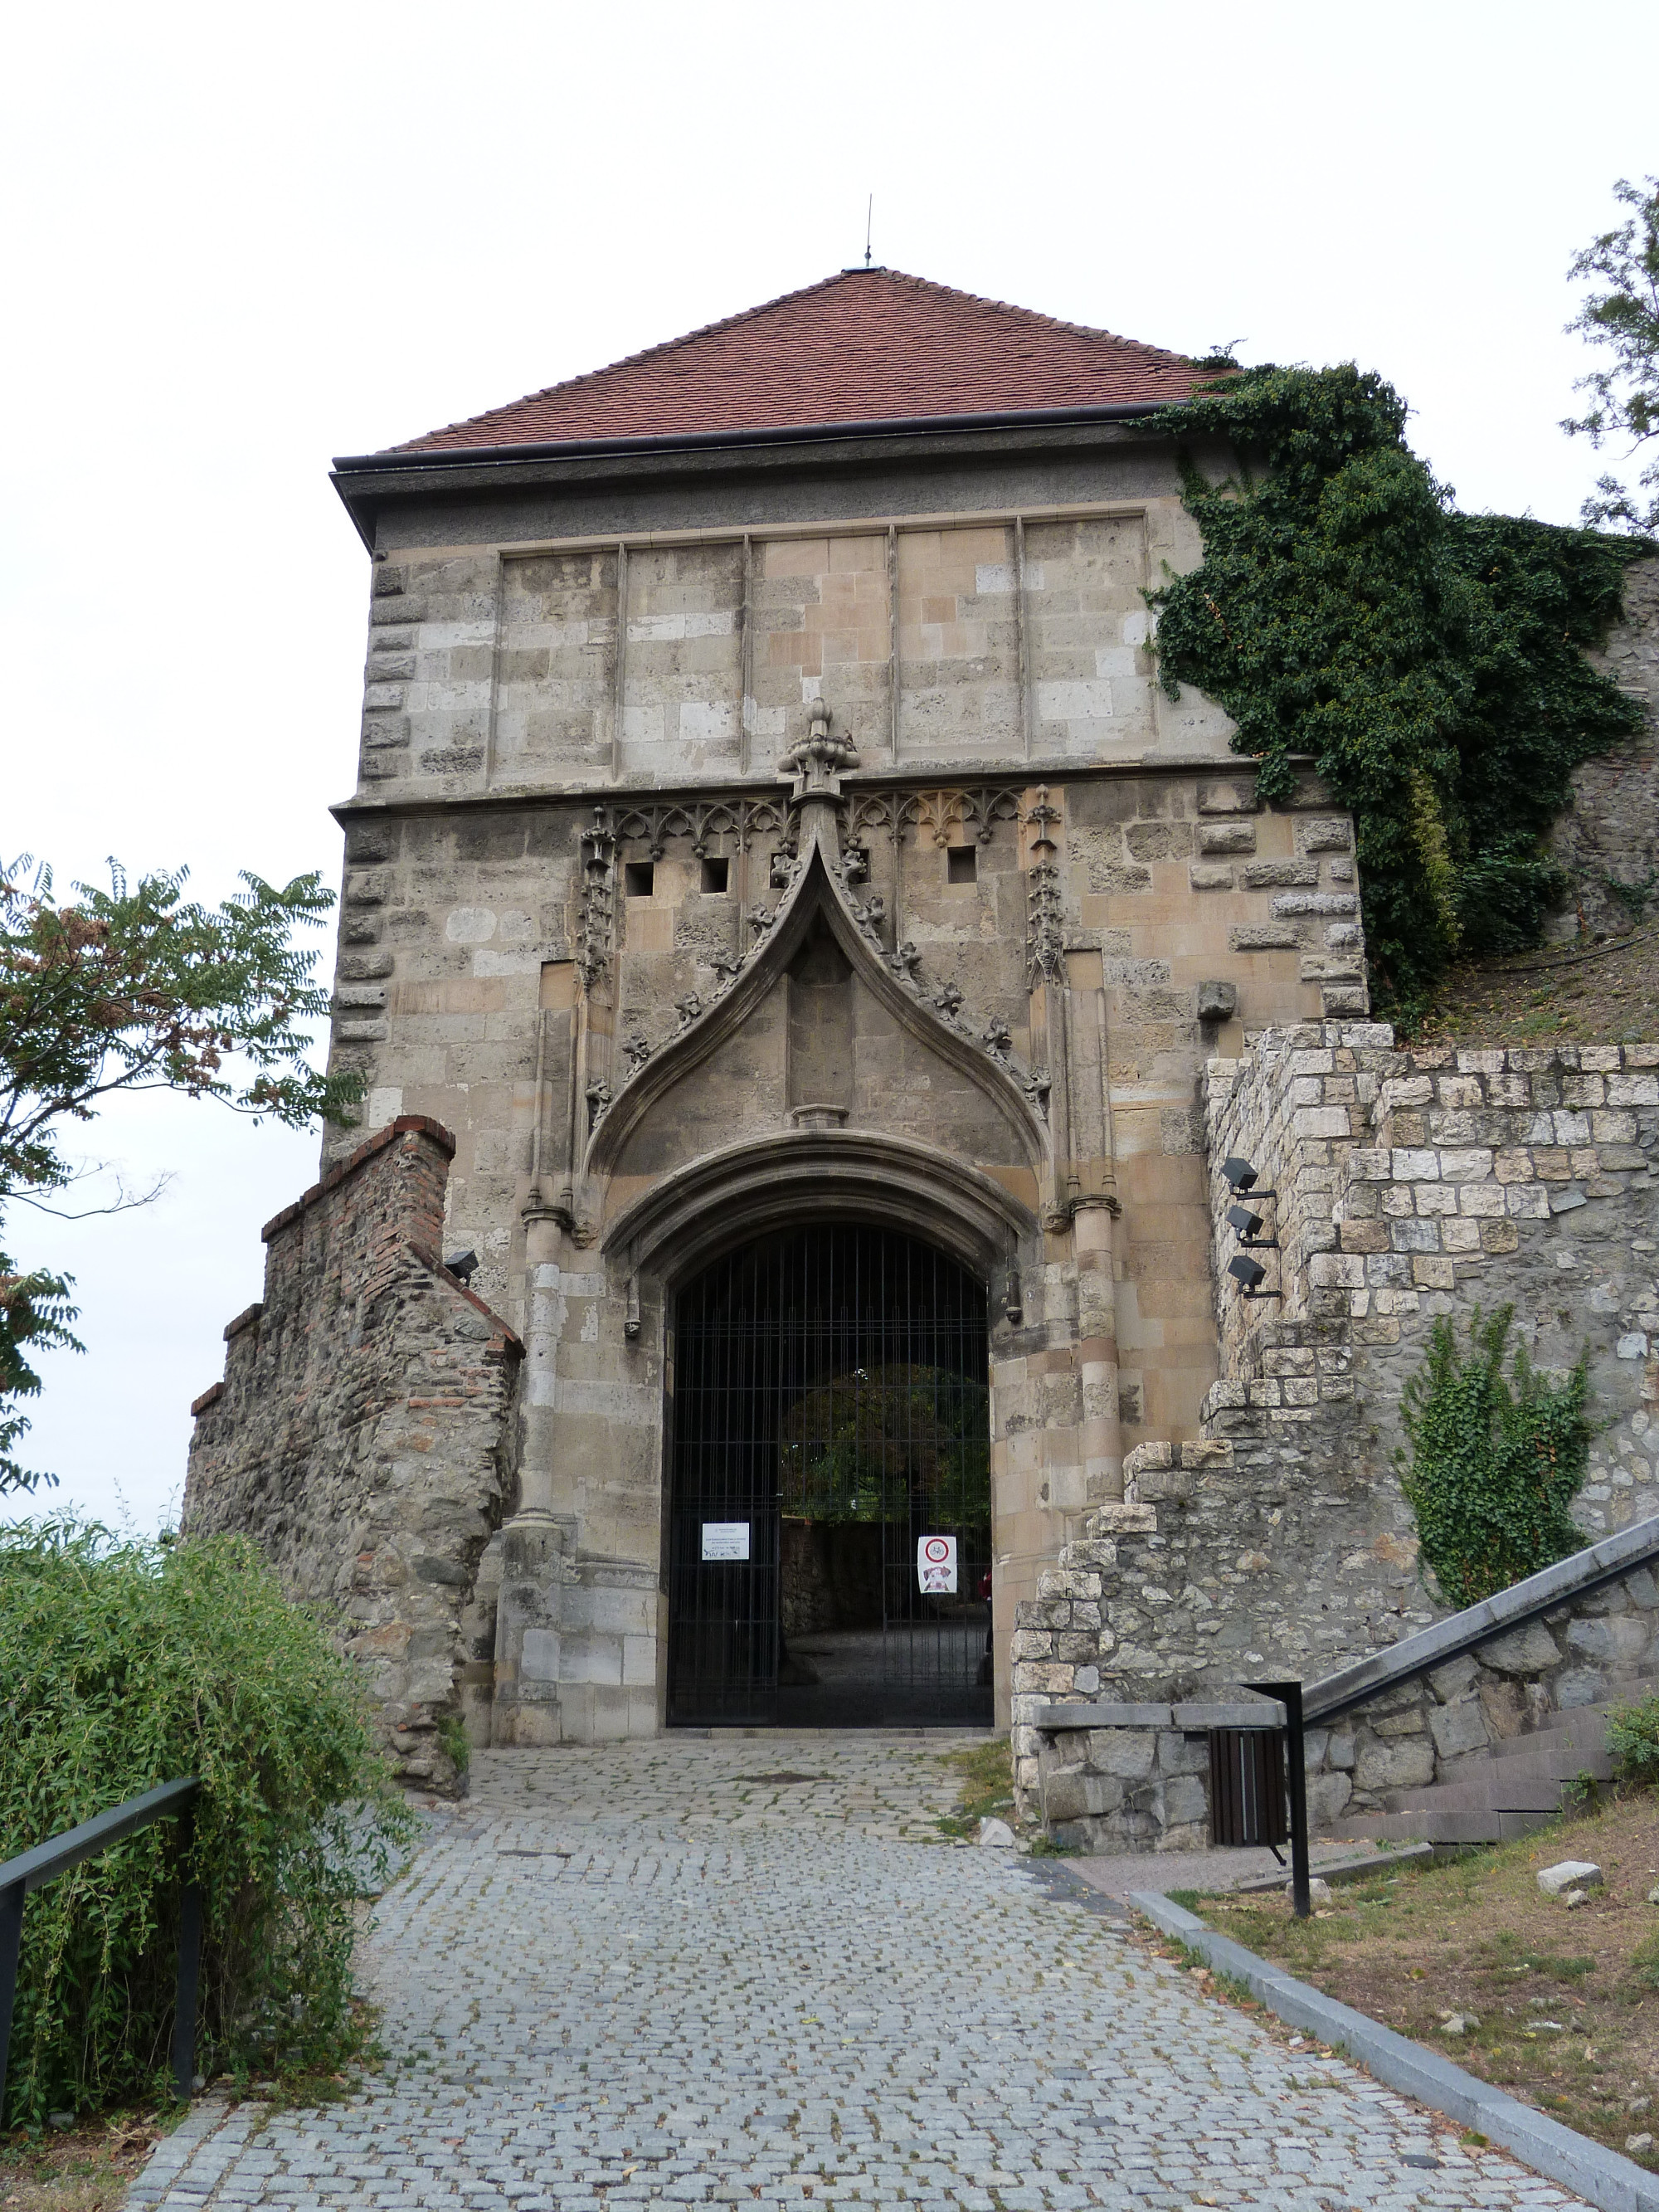 Sigismund Gate